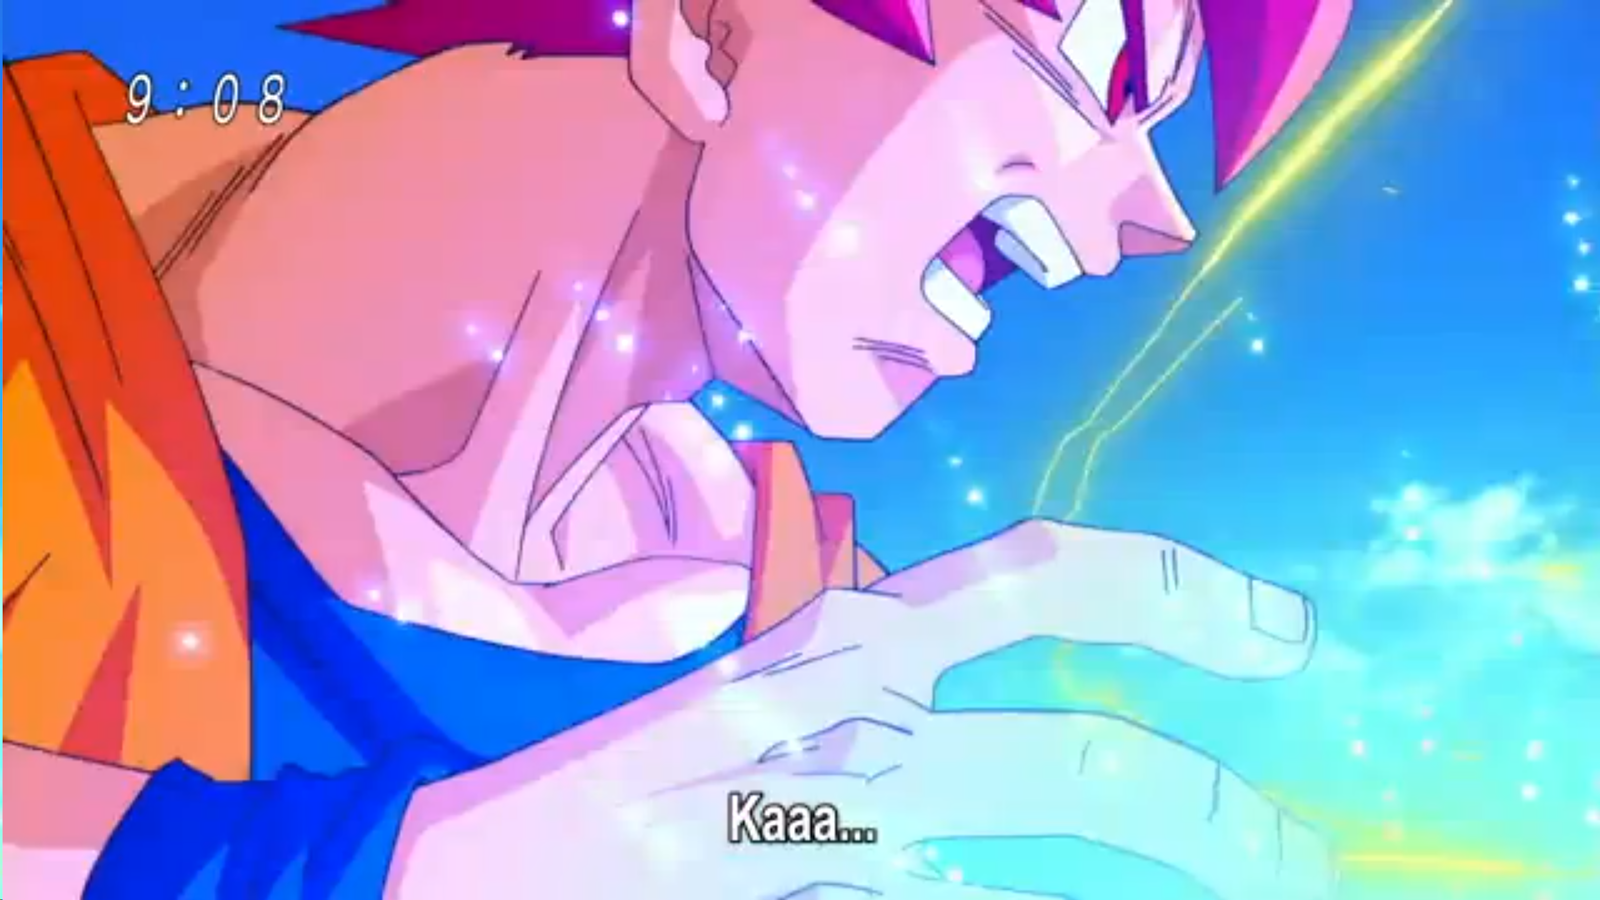 Dragon Ball Super Episódio 10 - Goku Super Saiyajin Deus vs Bills 